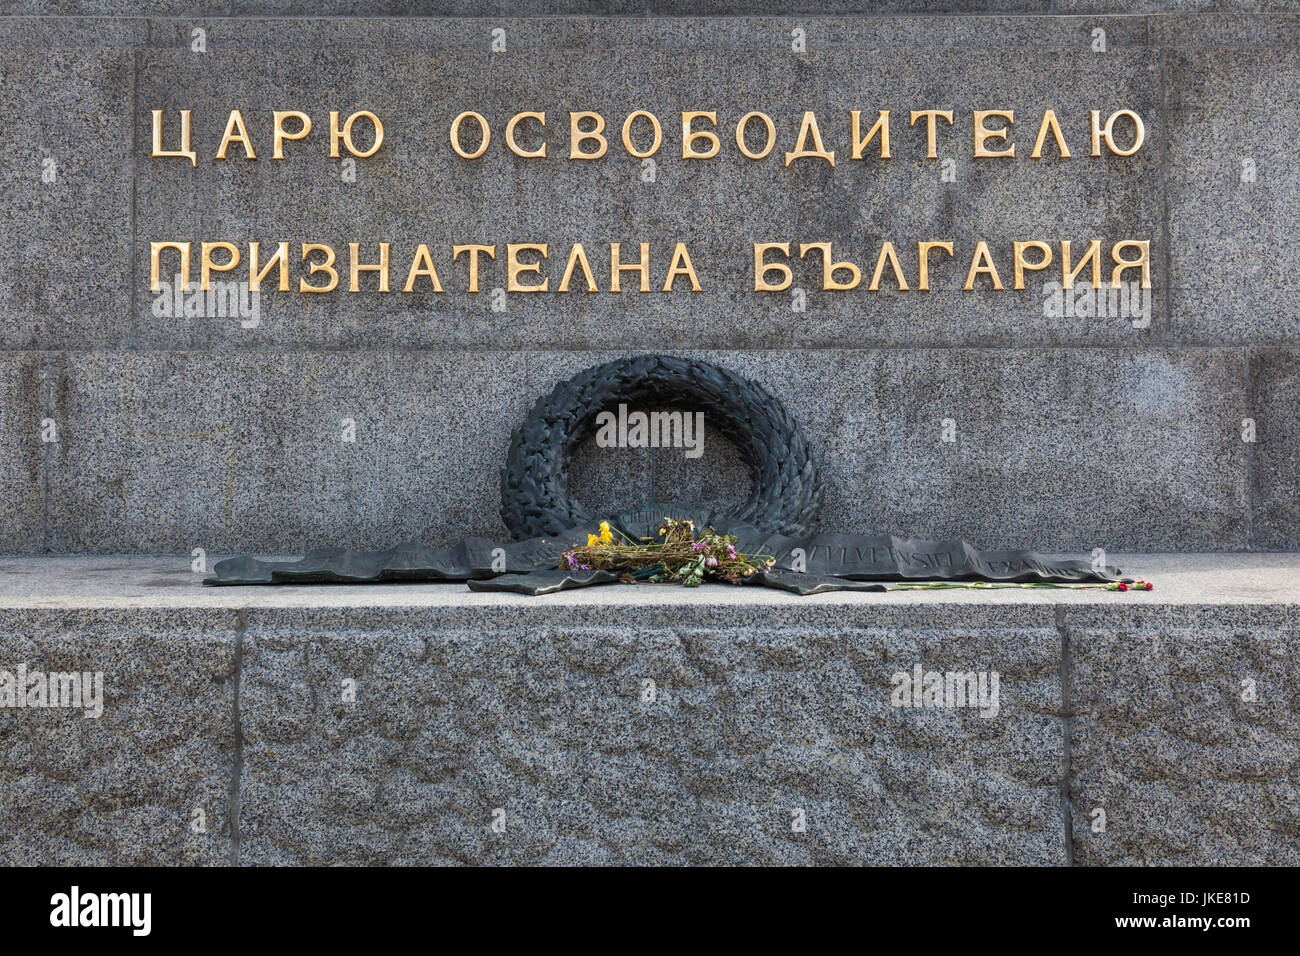 Bulgarien, Sofia, Ploshtad Narodno Sabranie Square, Denkmal für Zar Alexander II., der dazu, die Bulgaren beigetragen, die sich von der türkischen Herrschaft befreien Stockfoto